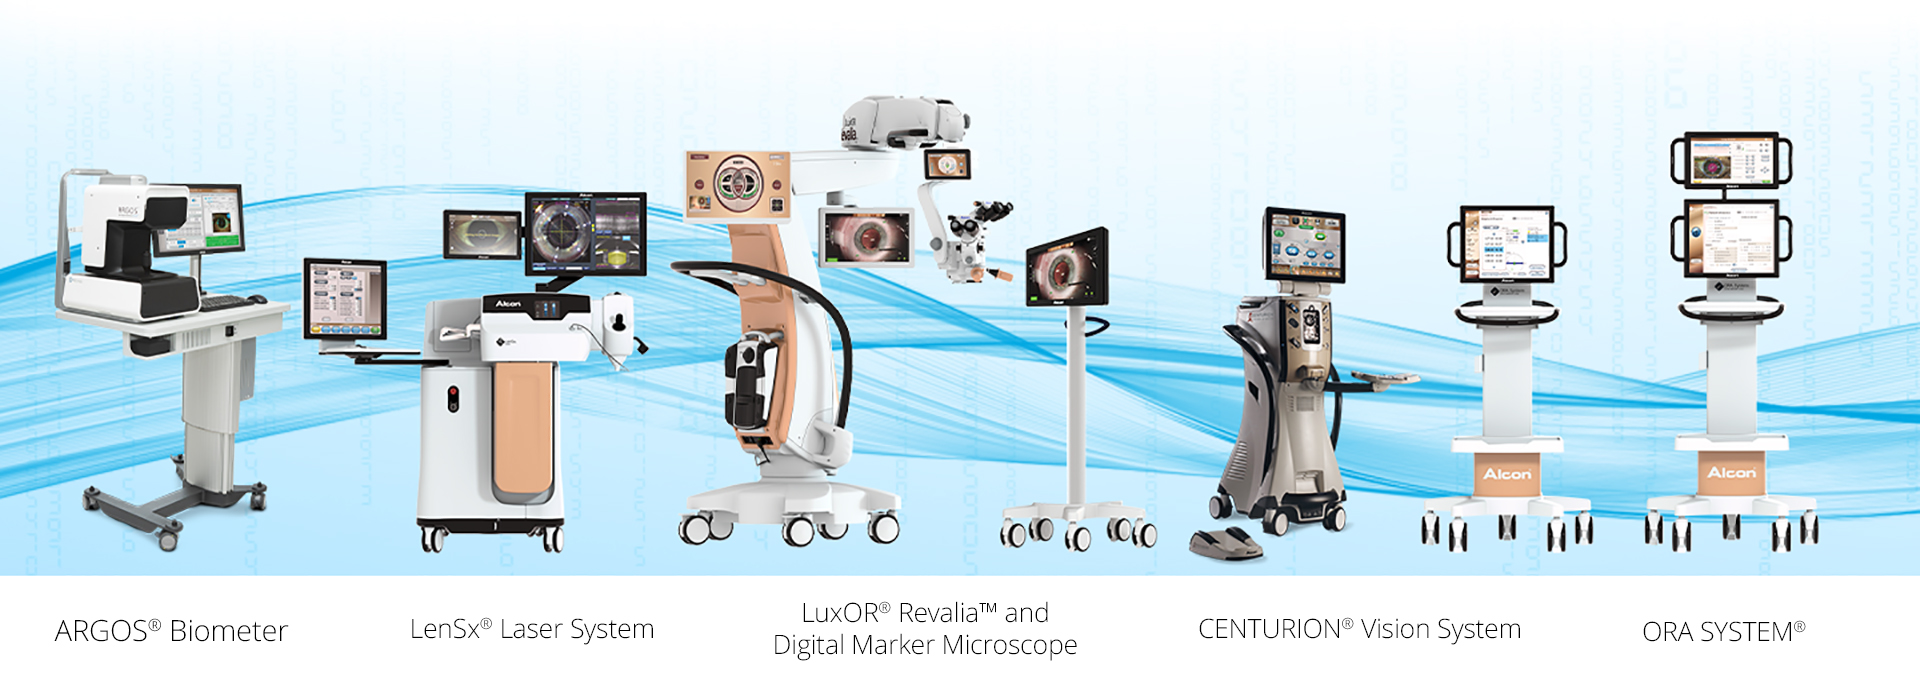 アルコン社製手術器具のイメージ図。ARGOS バイオメーター、LenSx Laser System、LuxOR Revalia Ophthalmic Microscope、Verion Digital Marker、Centurion Vision System、ORA SYSTEM